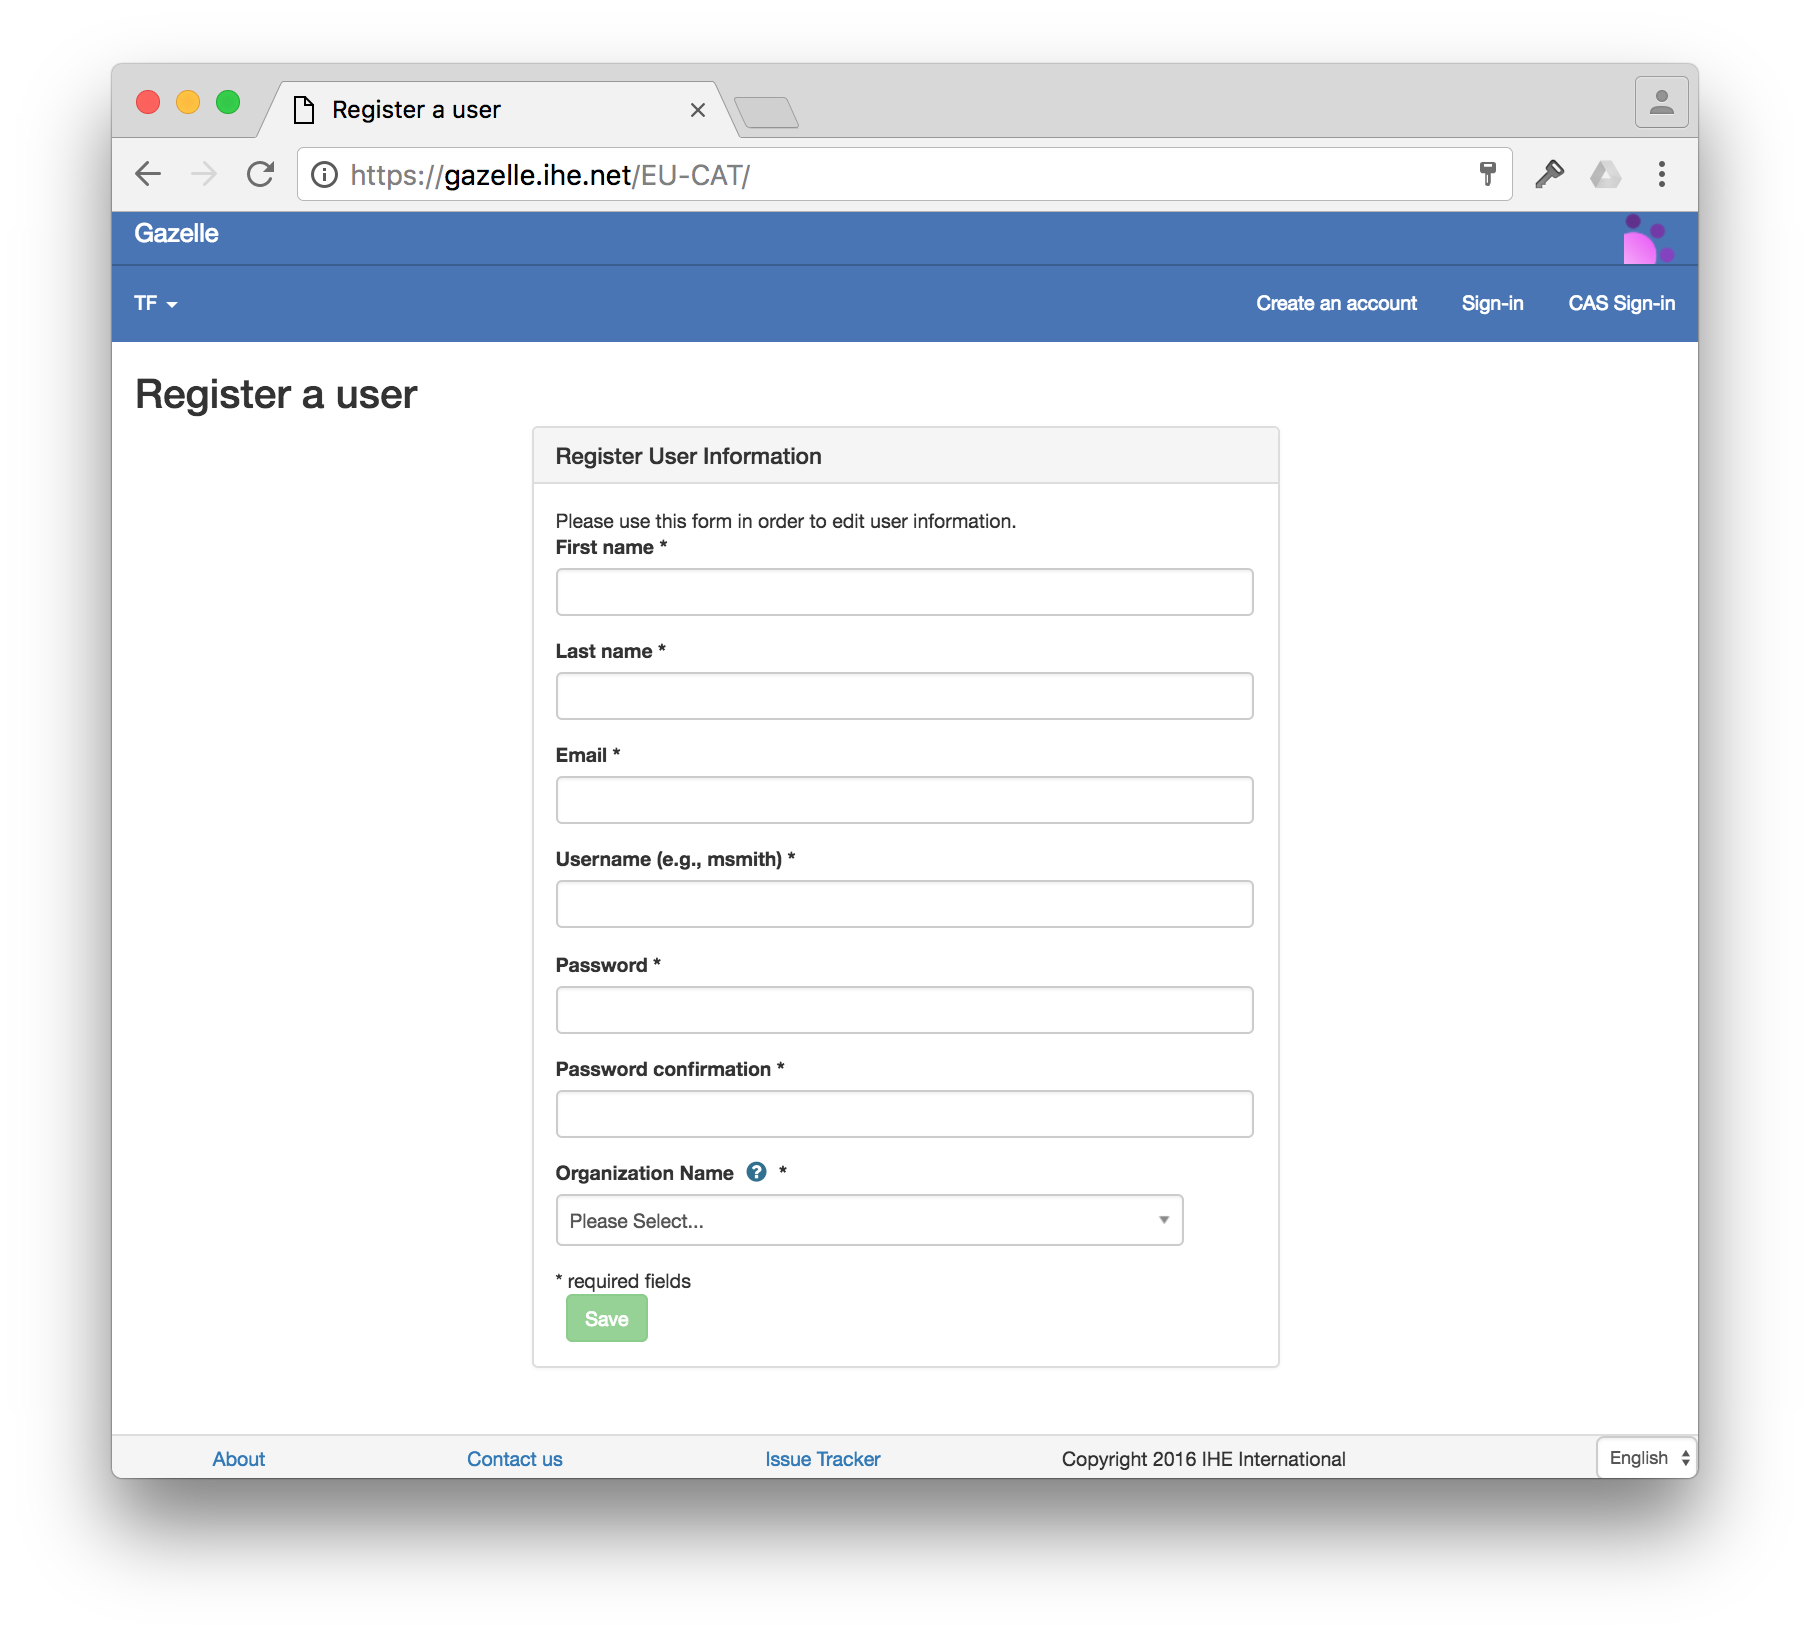 Registration of a user